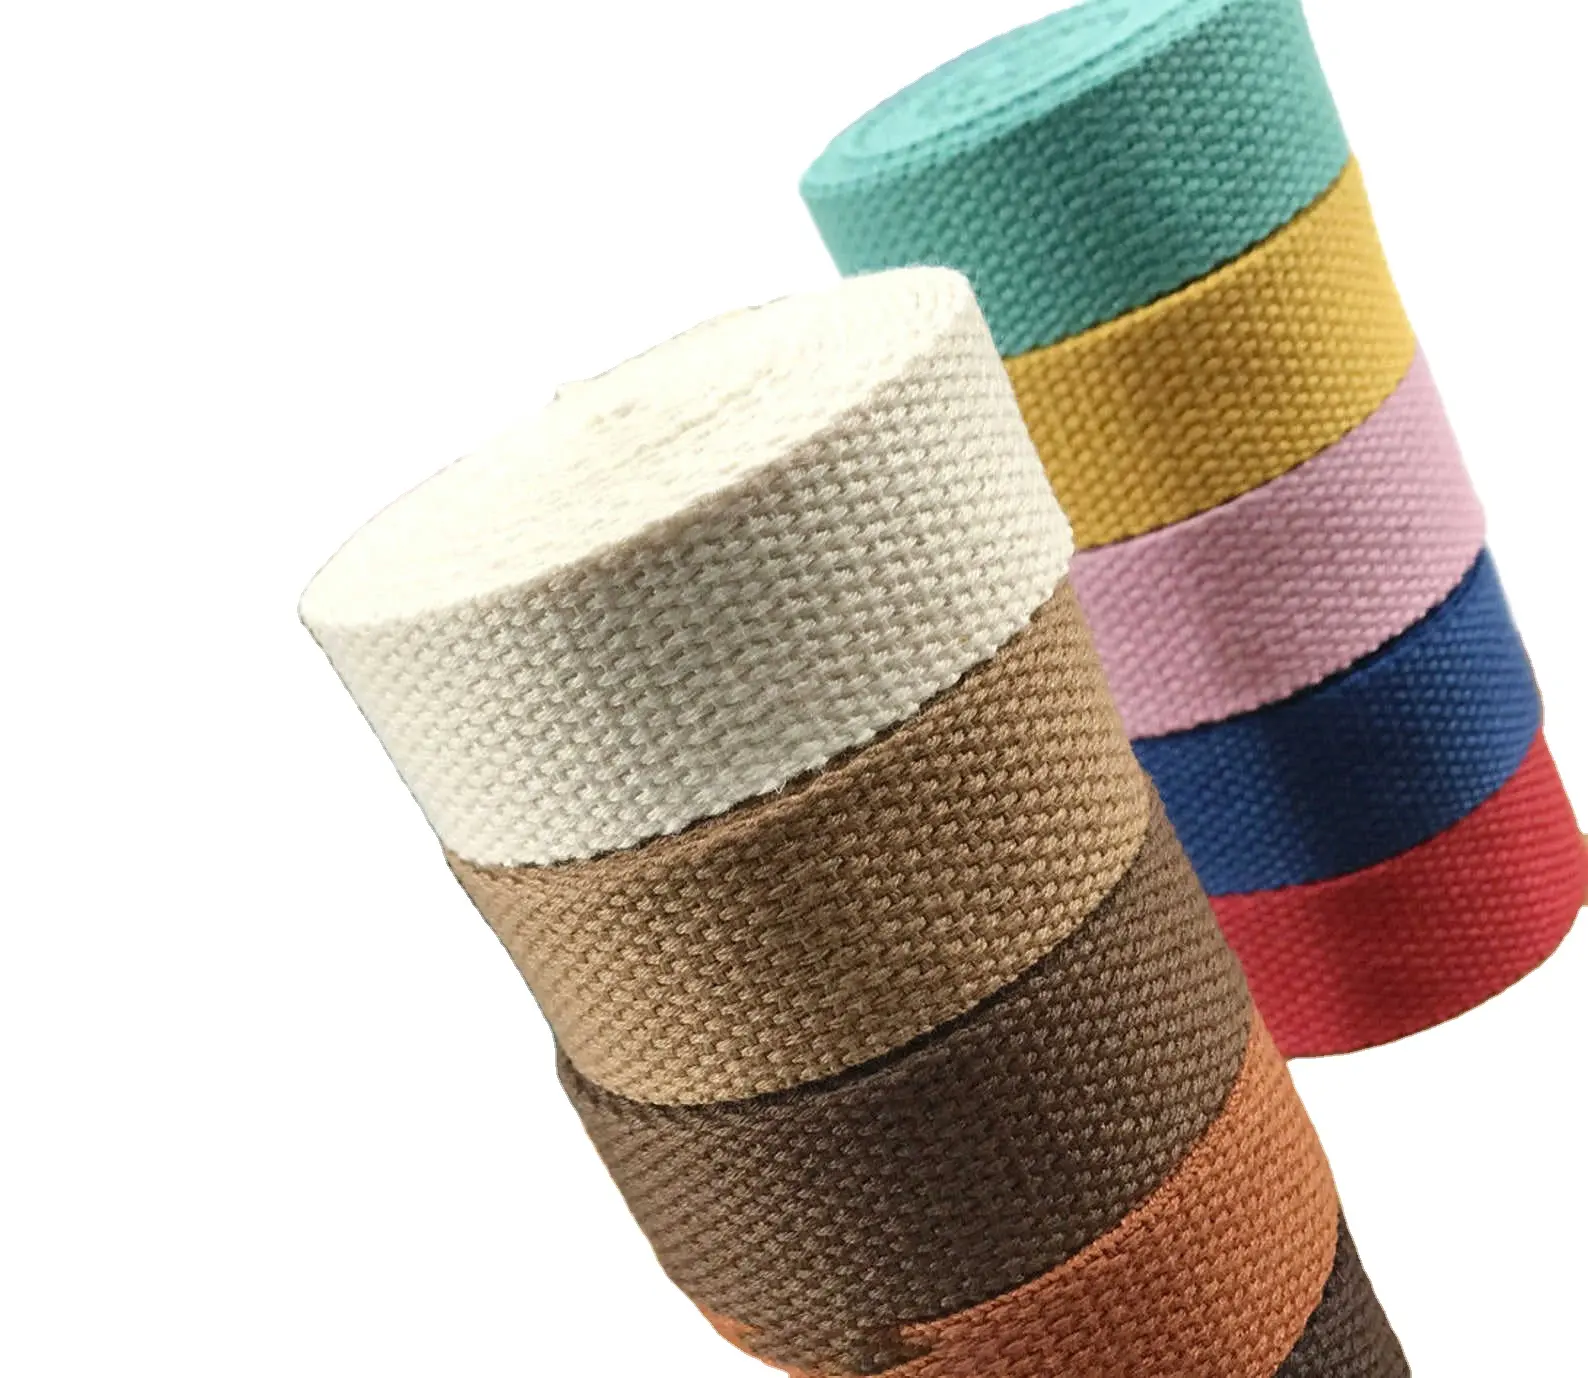 Fettuccia in tessuto di cotone riciclato sostenibile personalizzata per tracolla